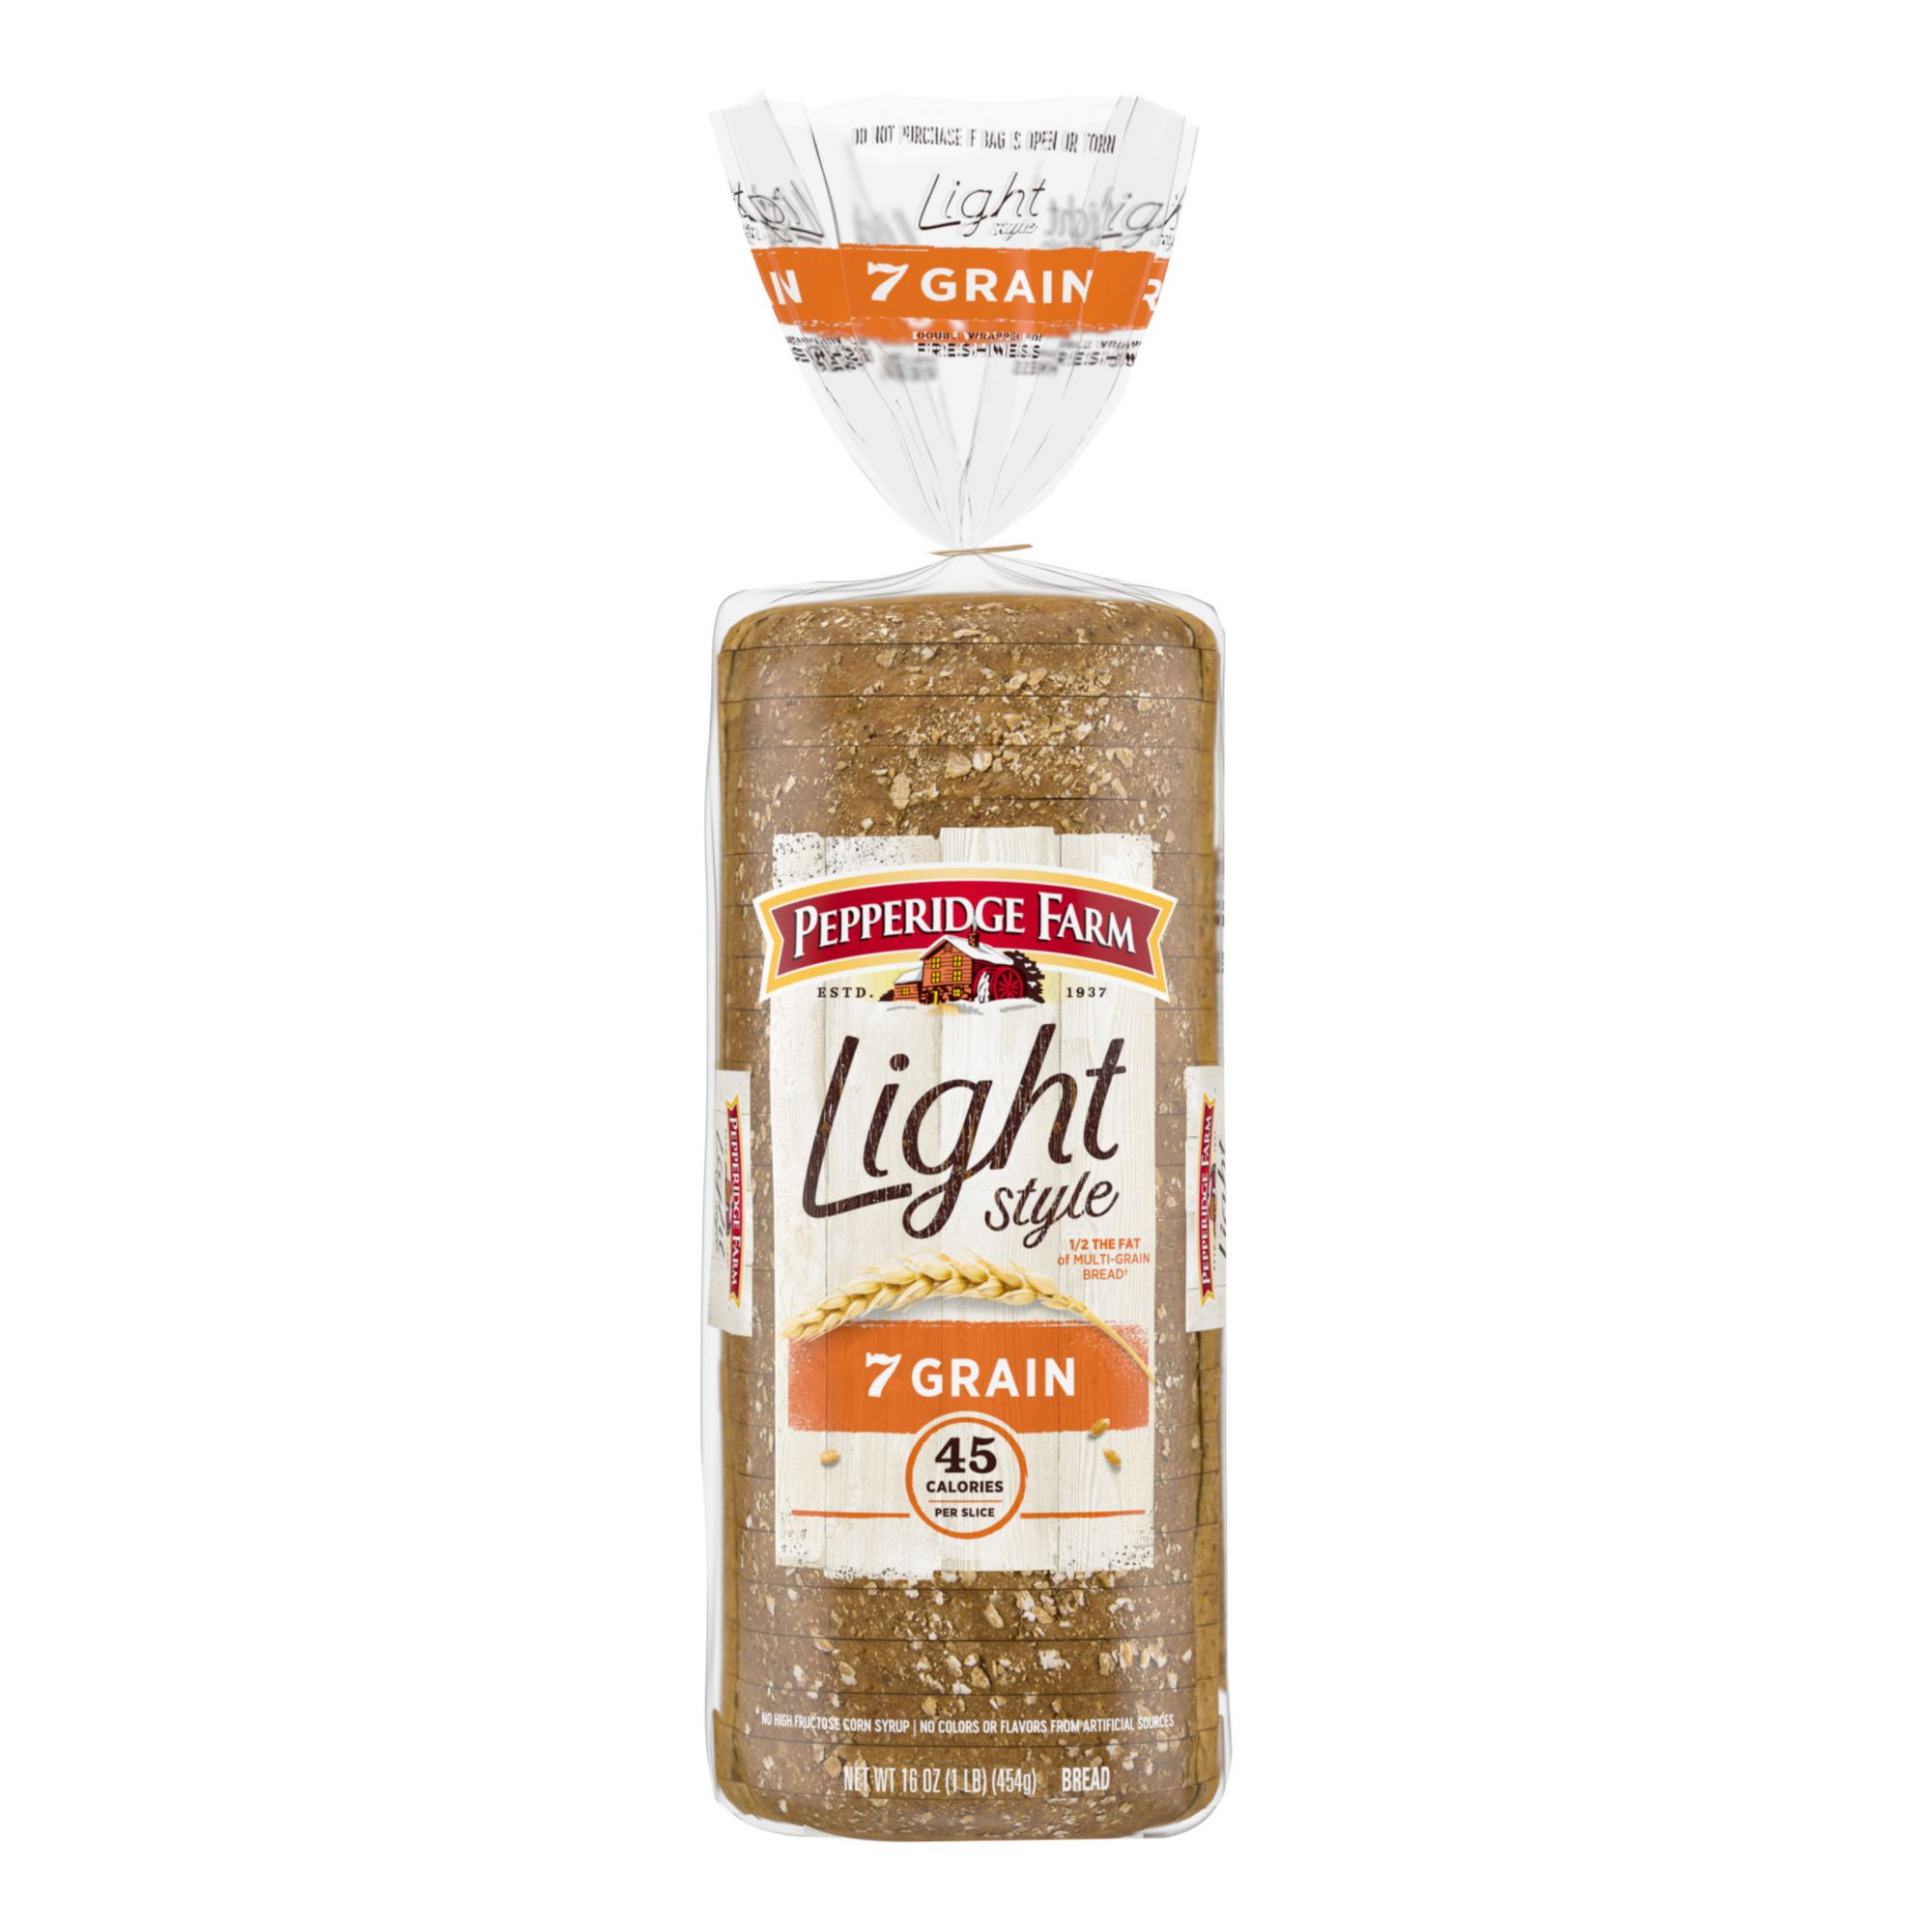 Pepperidge Farm Light Style 7 Grain Bread, 16 oz.